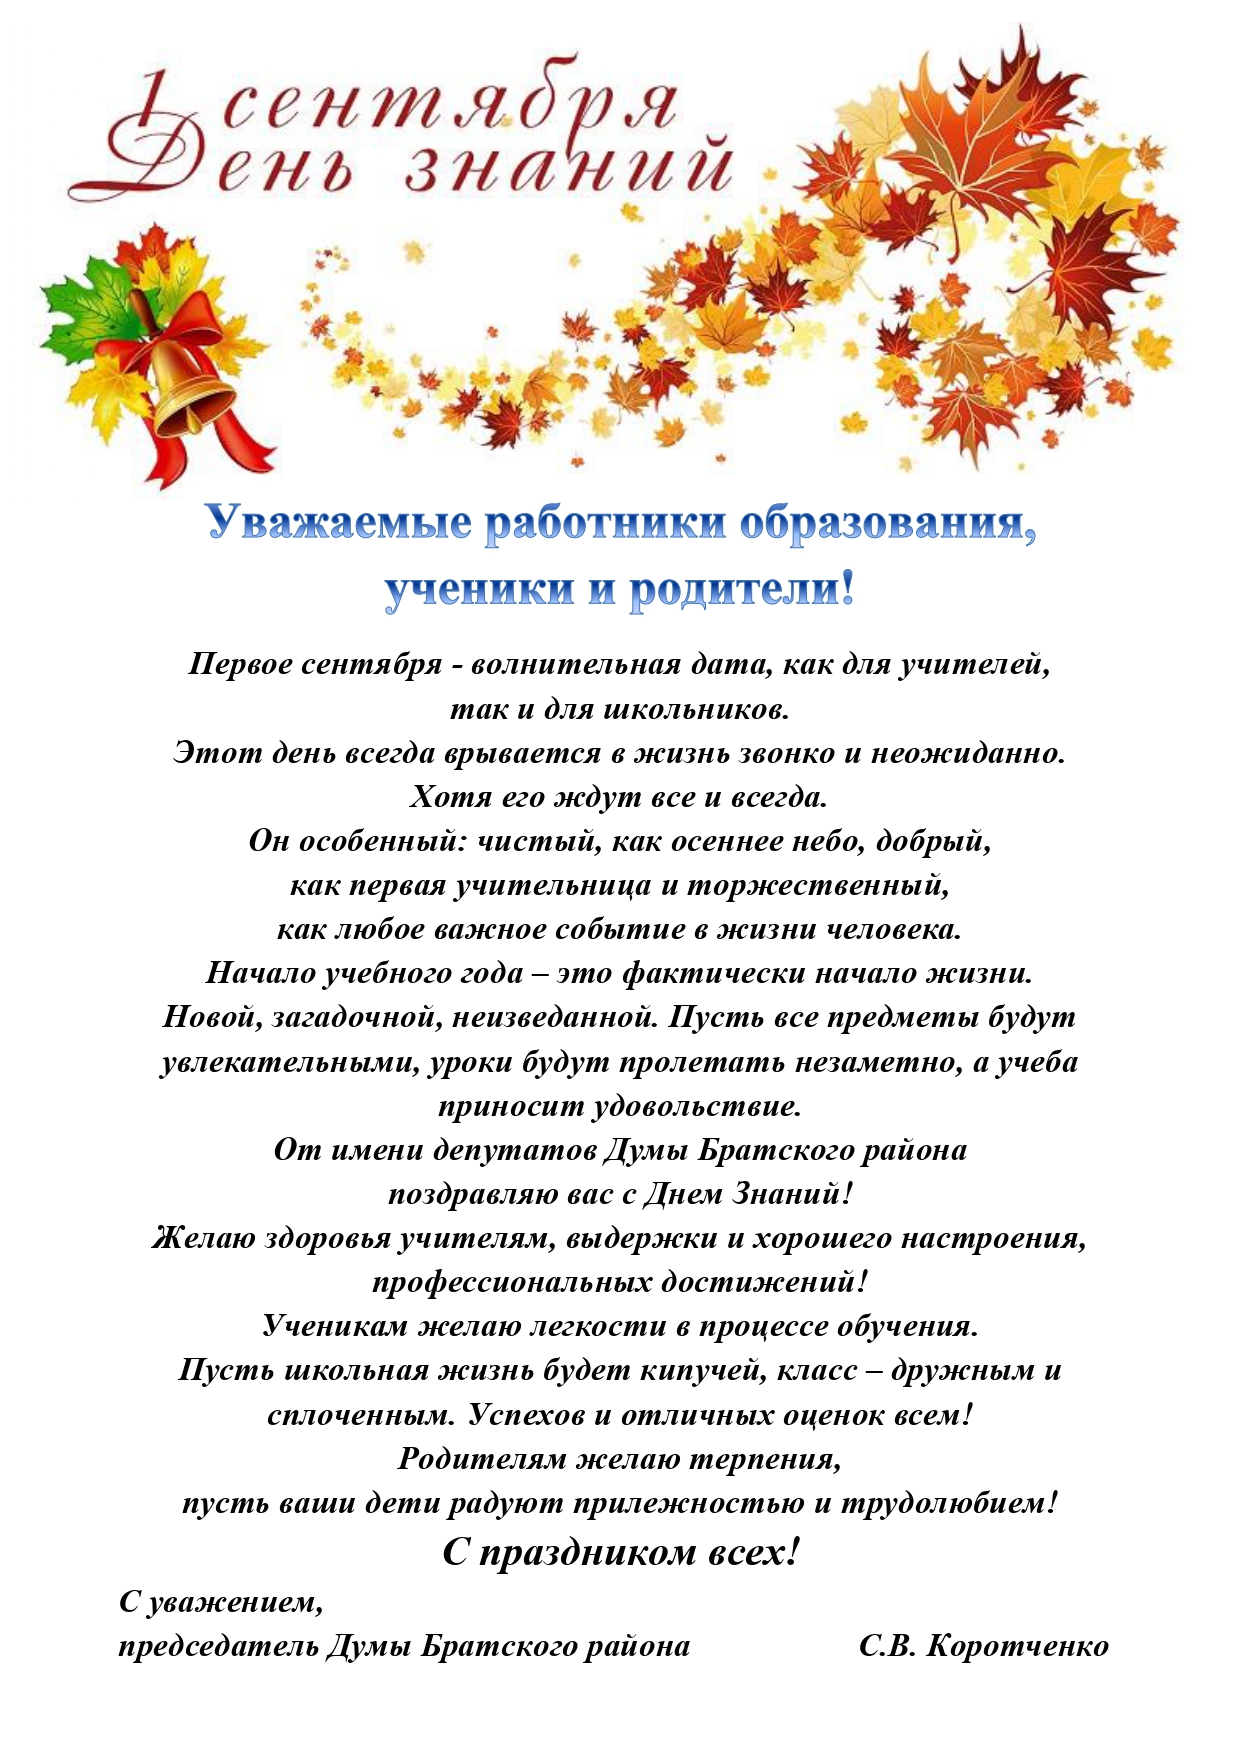 Поздравление с 1 сентября от депутатов Думы Братского района VII созыва.